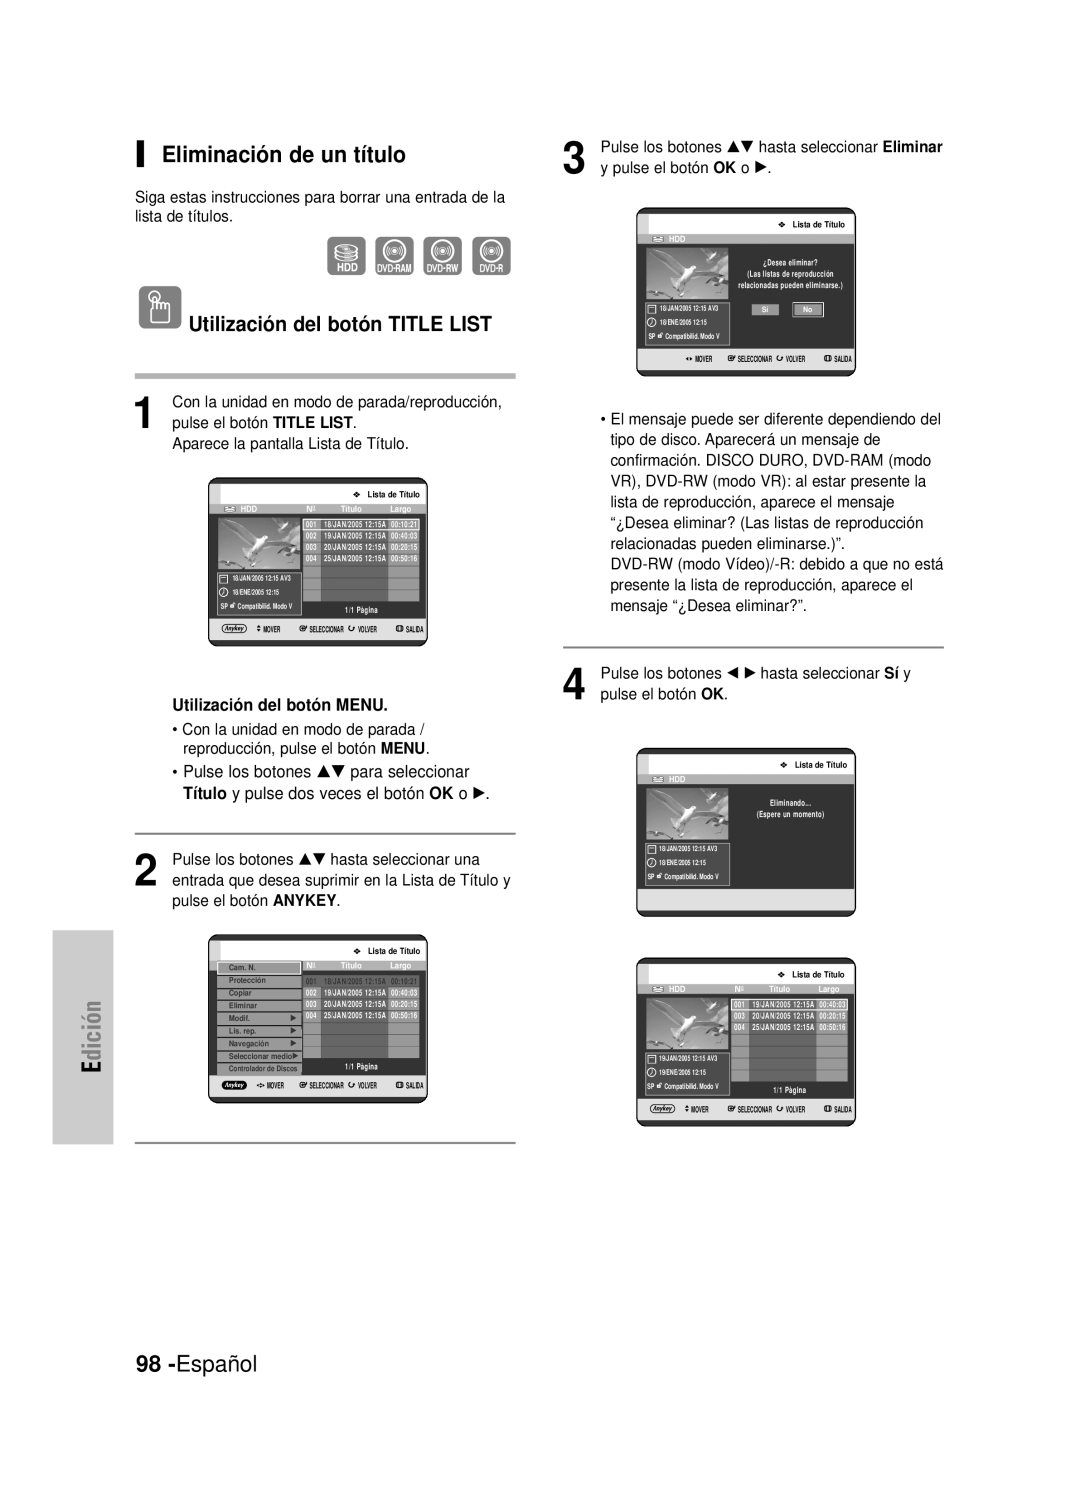 Samsung DVD-HR725/XET manual Eliminación de un título, Español, Utilización del botón TITLE LIST, pulse el botón TITLE LIST 